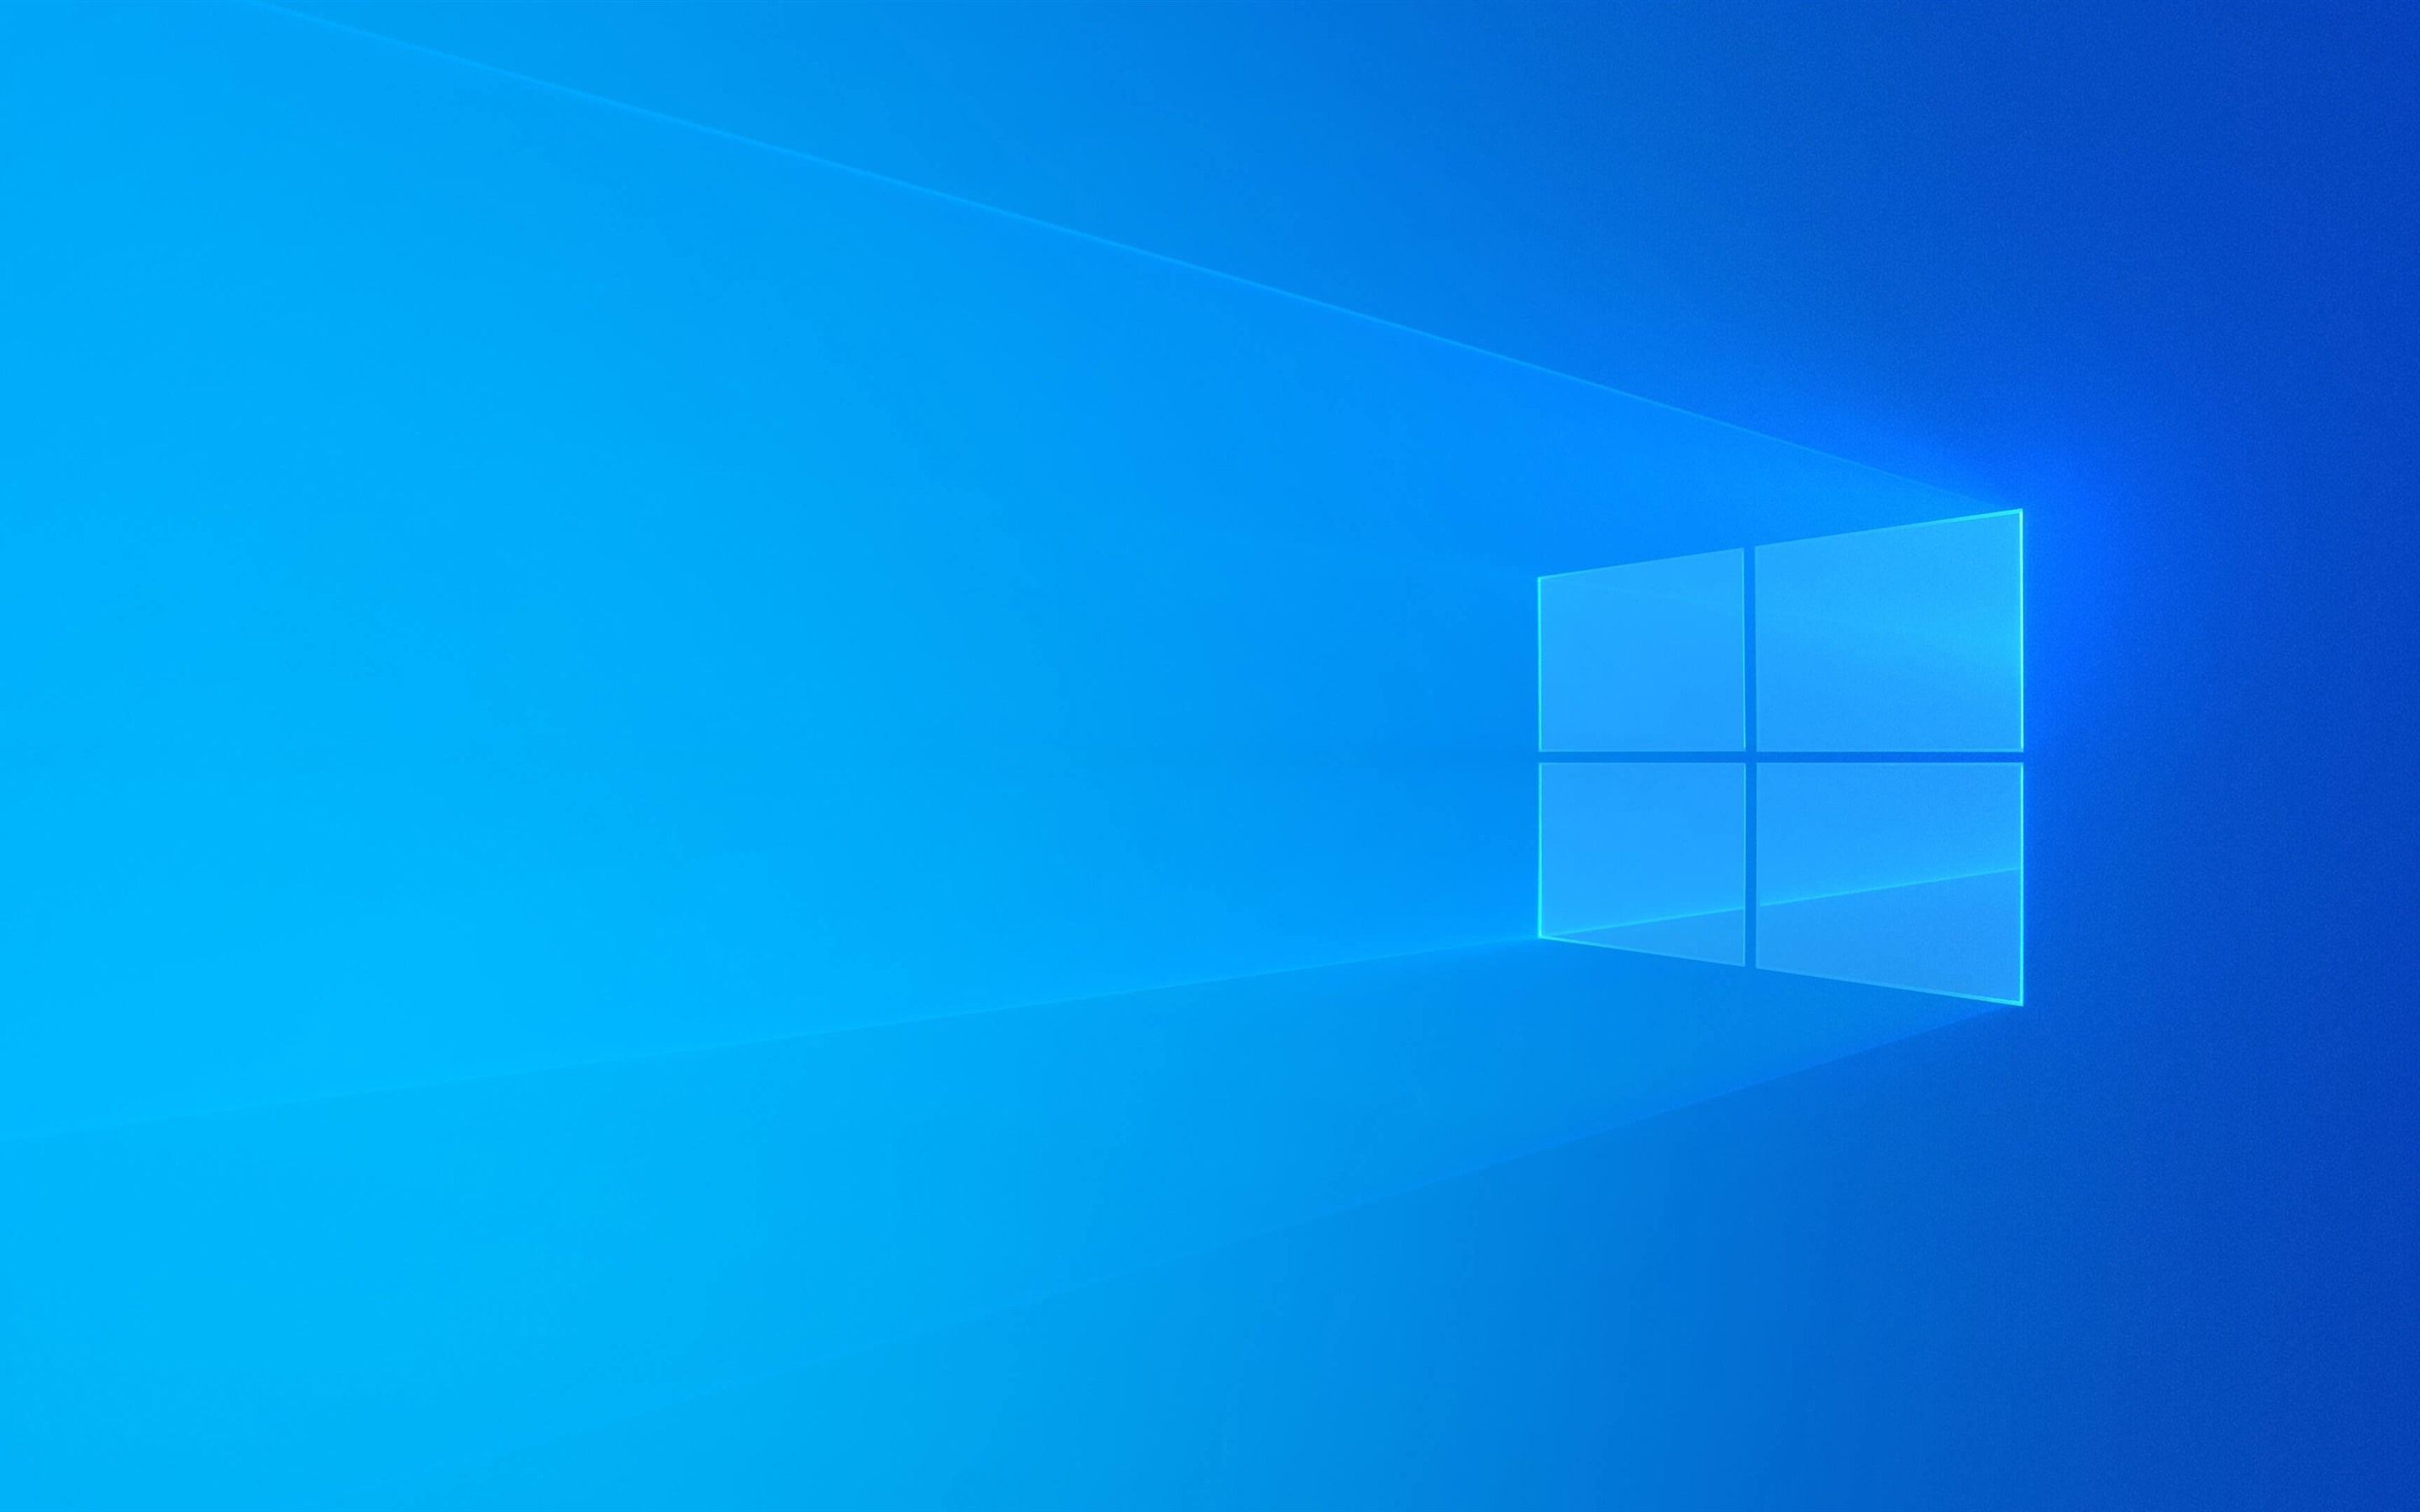  Windows Hintergrundbild 2880x1800. Windows blauer Hintergrund, Licht, abstraktes Design 3840x2160 UHD 4K Hintergrundbilder, HD, Bild